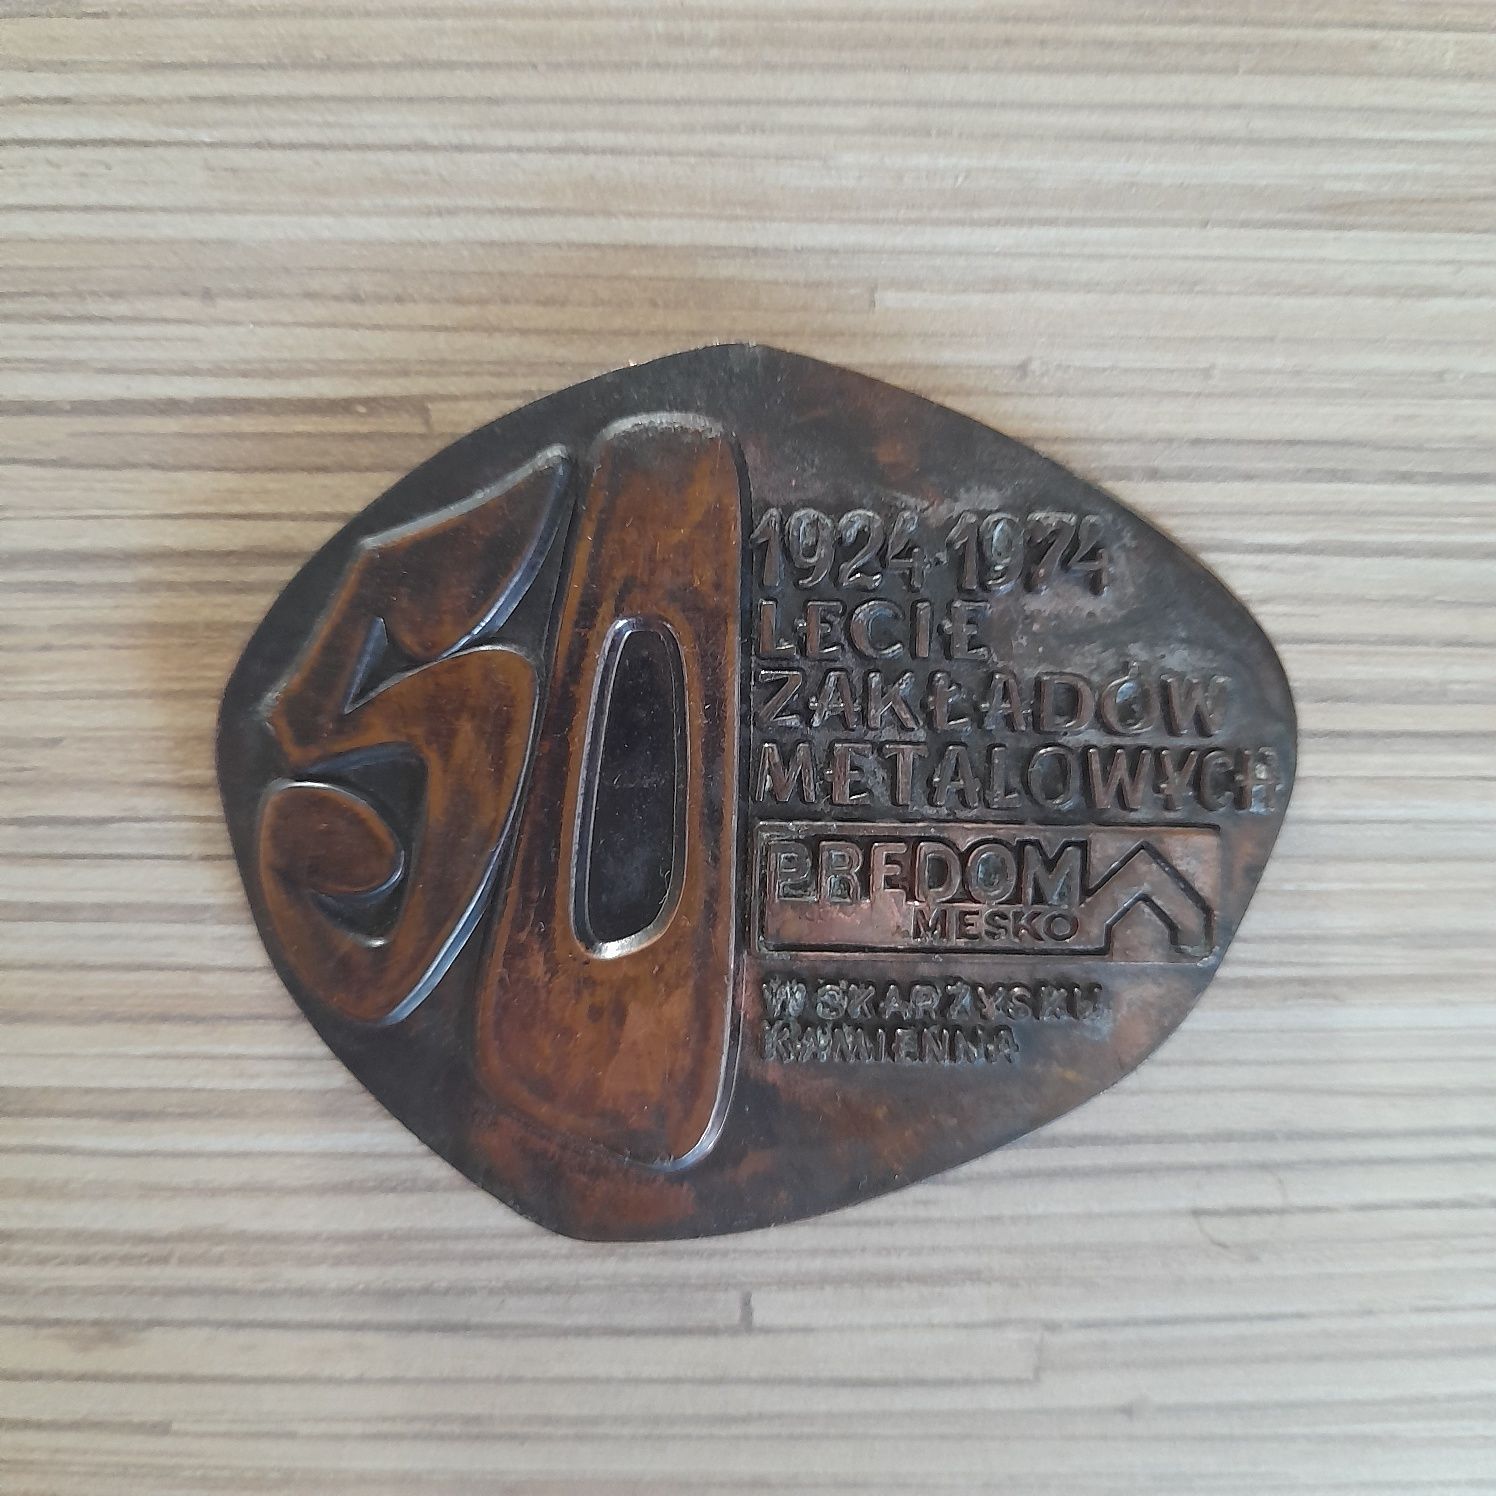 Medal 50 Lecie Zakladow Metalowych .